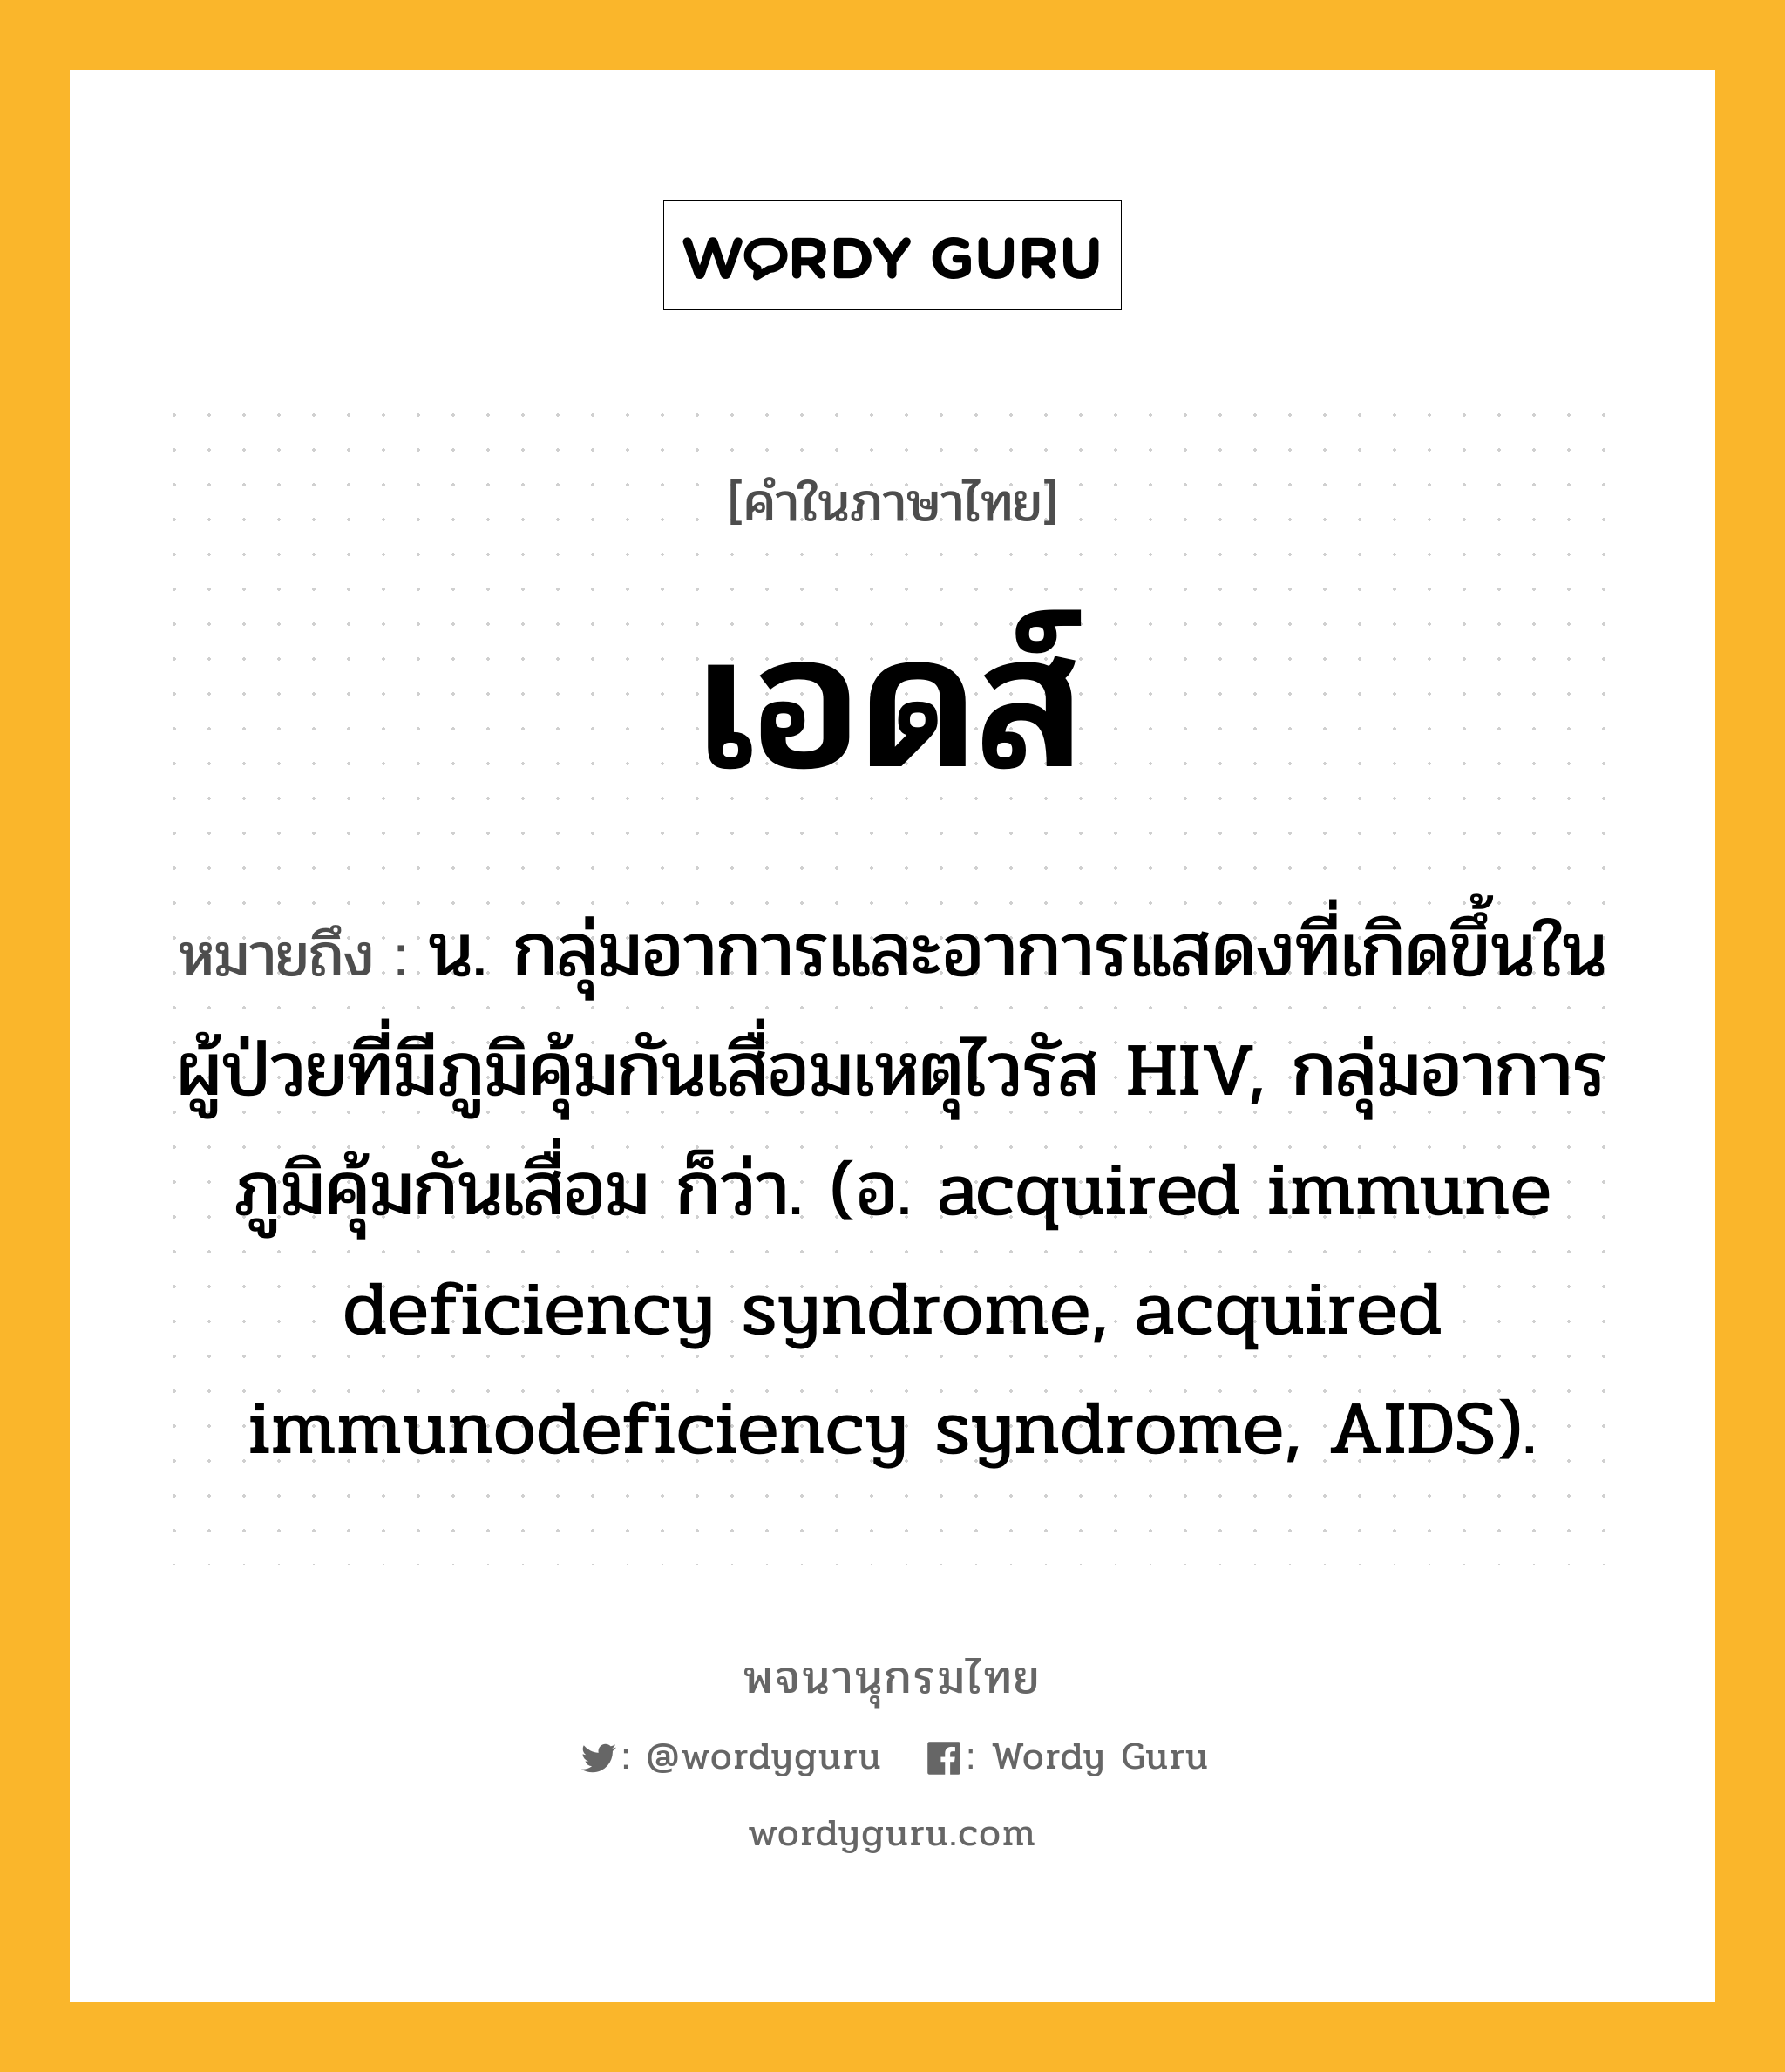 เอดส์ หมายถึงอะไร?, คำในภาษาไทย เอดส์ หมายถึง น. กลุ่มอาการและอาการแสดงที่เกิดขึ้นในผู้ป่วยที่มีภูมิคุ้มกันเสื่อมเหตุไวรัส HIV, กลุ่มอาการภูมิคุ้มกันเสื่อม ก็ว่า. (อ. acquired immune deficiency syndrome, acquired immunodeficiency syndrome, AIDS).